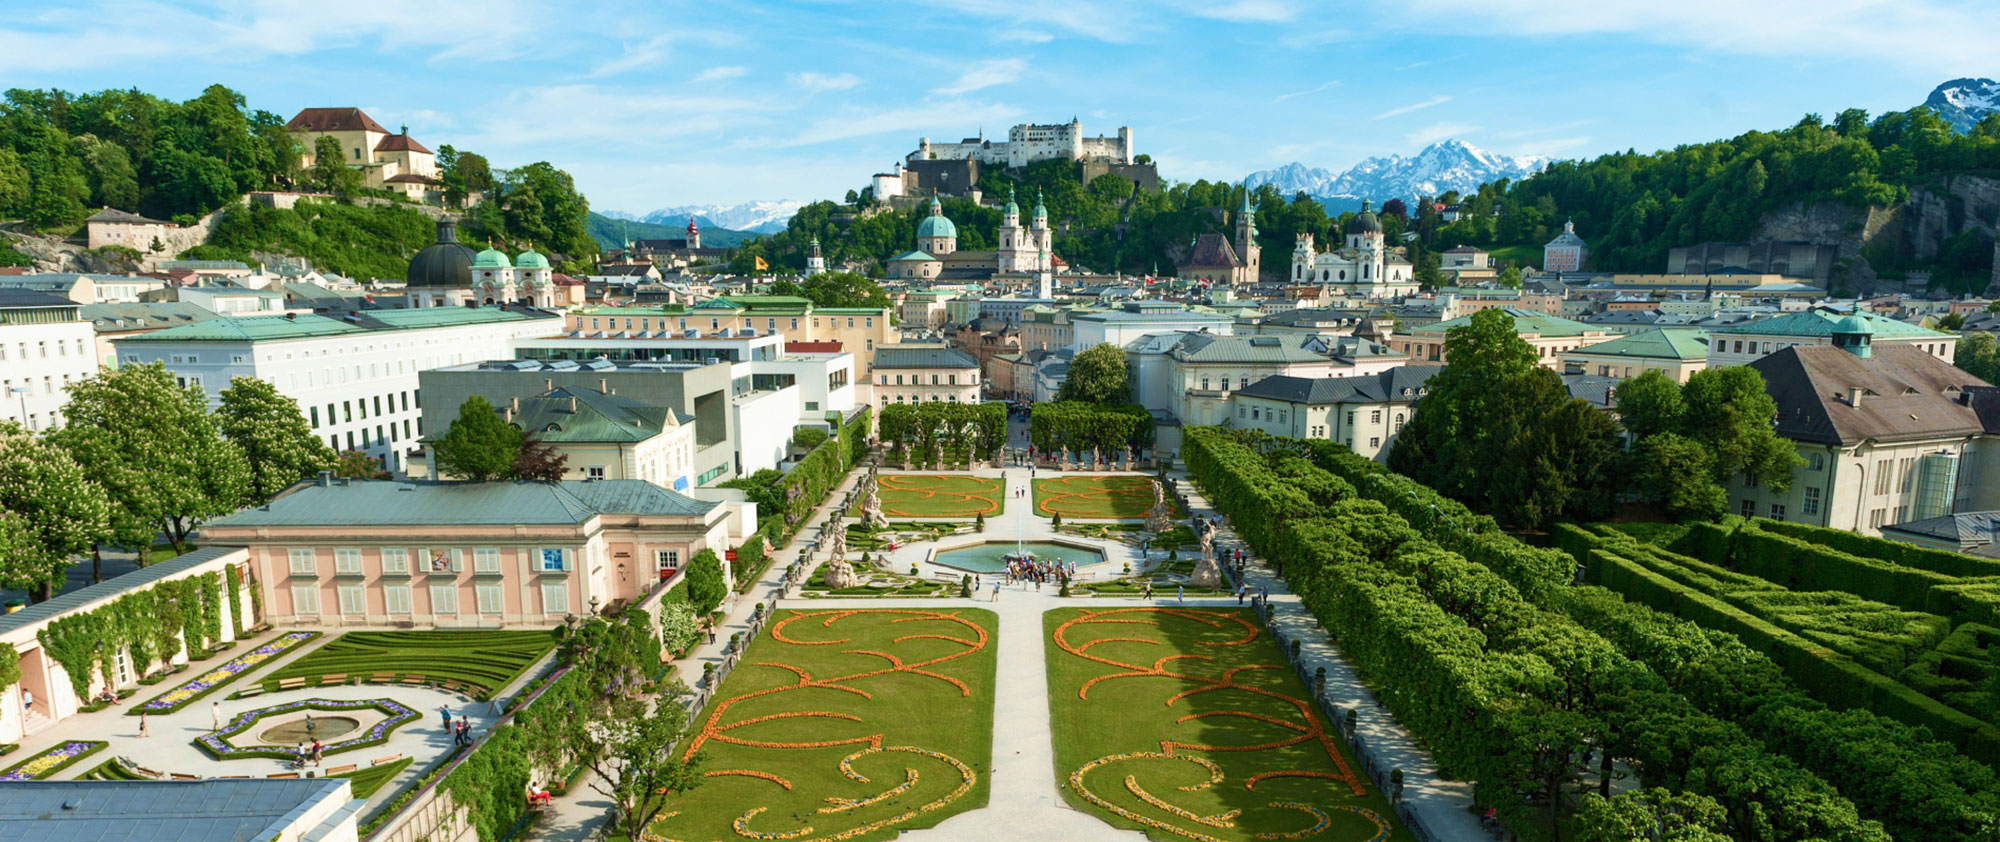 Mirabellgarten Salzburg © SalzburgerLand Tourismus